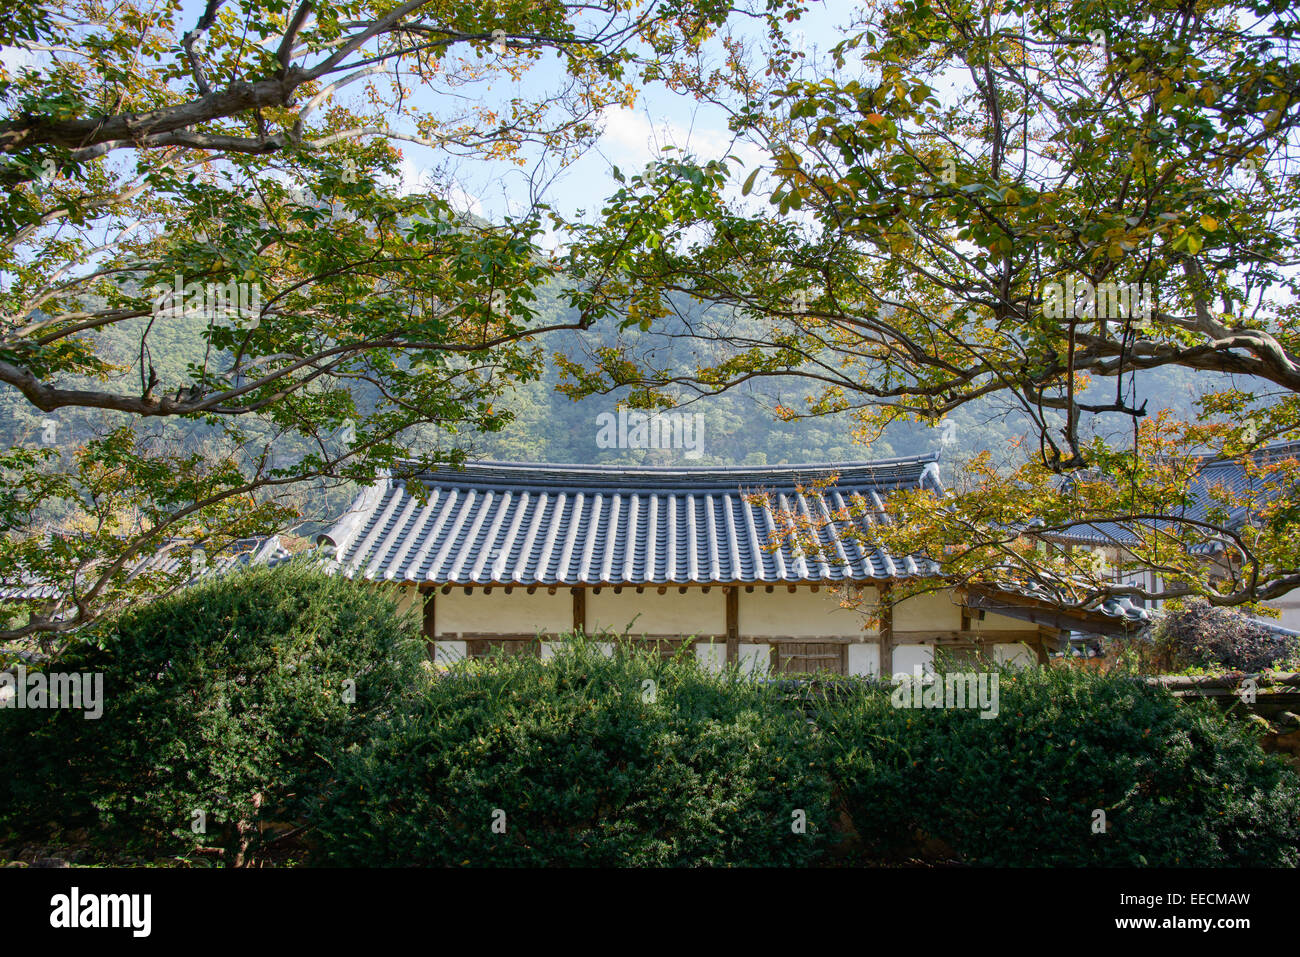 Koreanische traditionelle gefliest Dach mit Krepp Mytle Baum Stockfoto